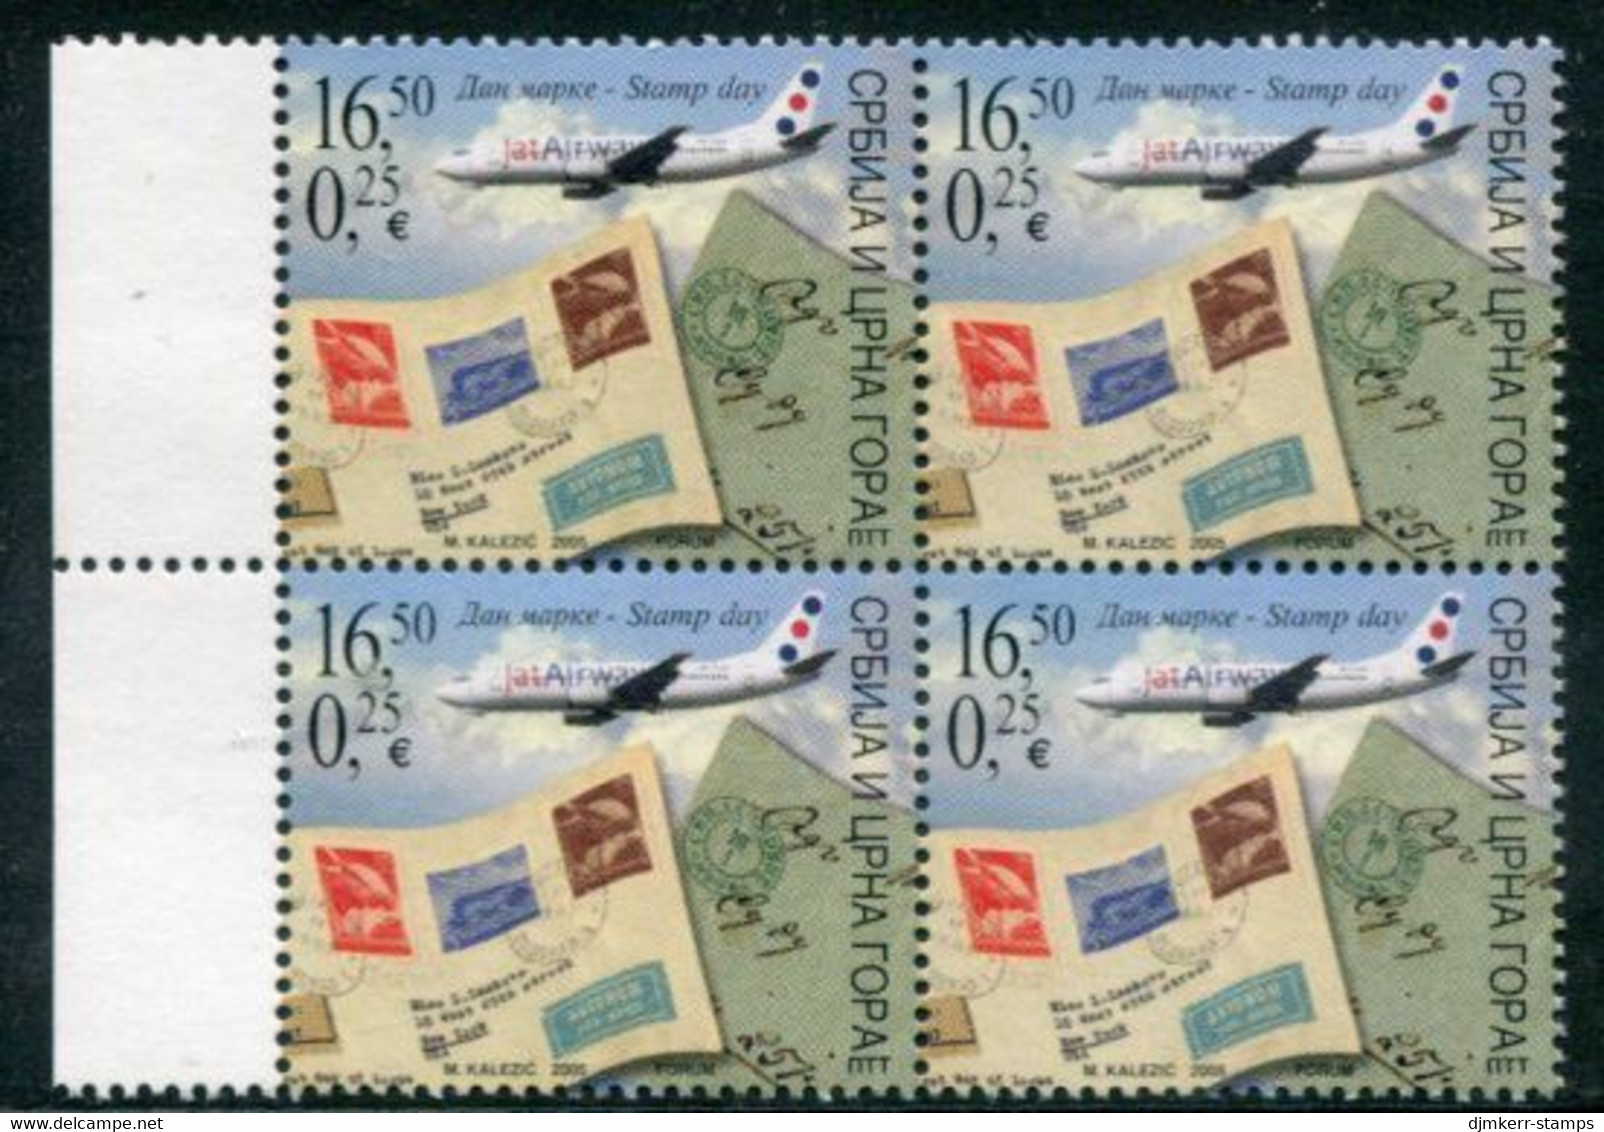 YUGOSLAVIA (Serbia & Montenegro)  2005 Stamp Day Block Of 4 MNH / **.  Michel 3295 - Nuevos